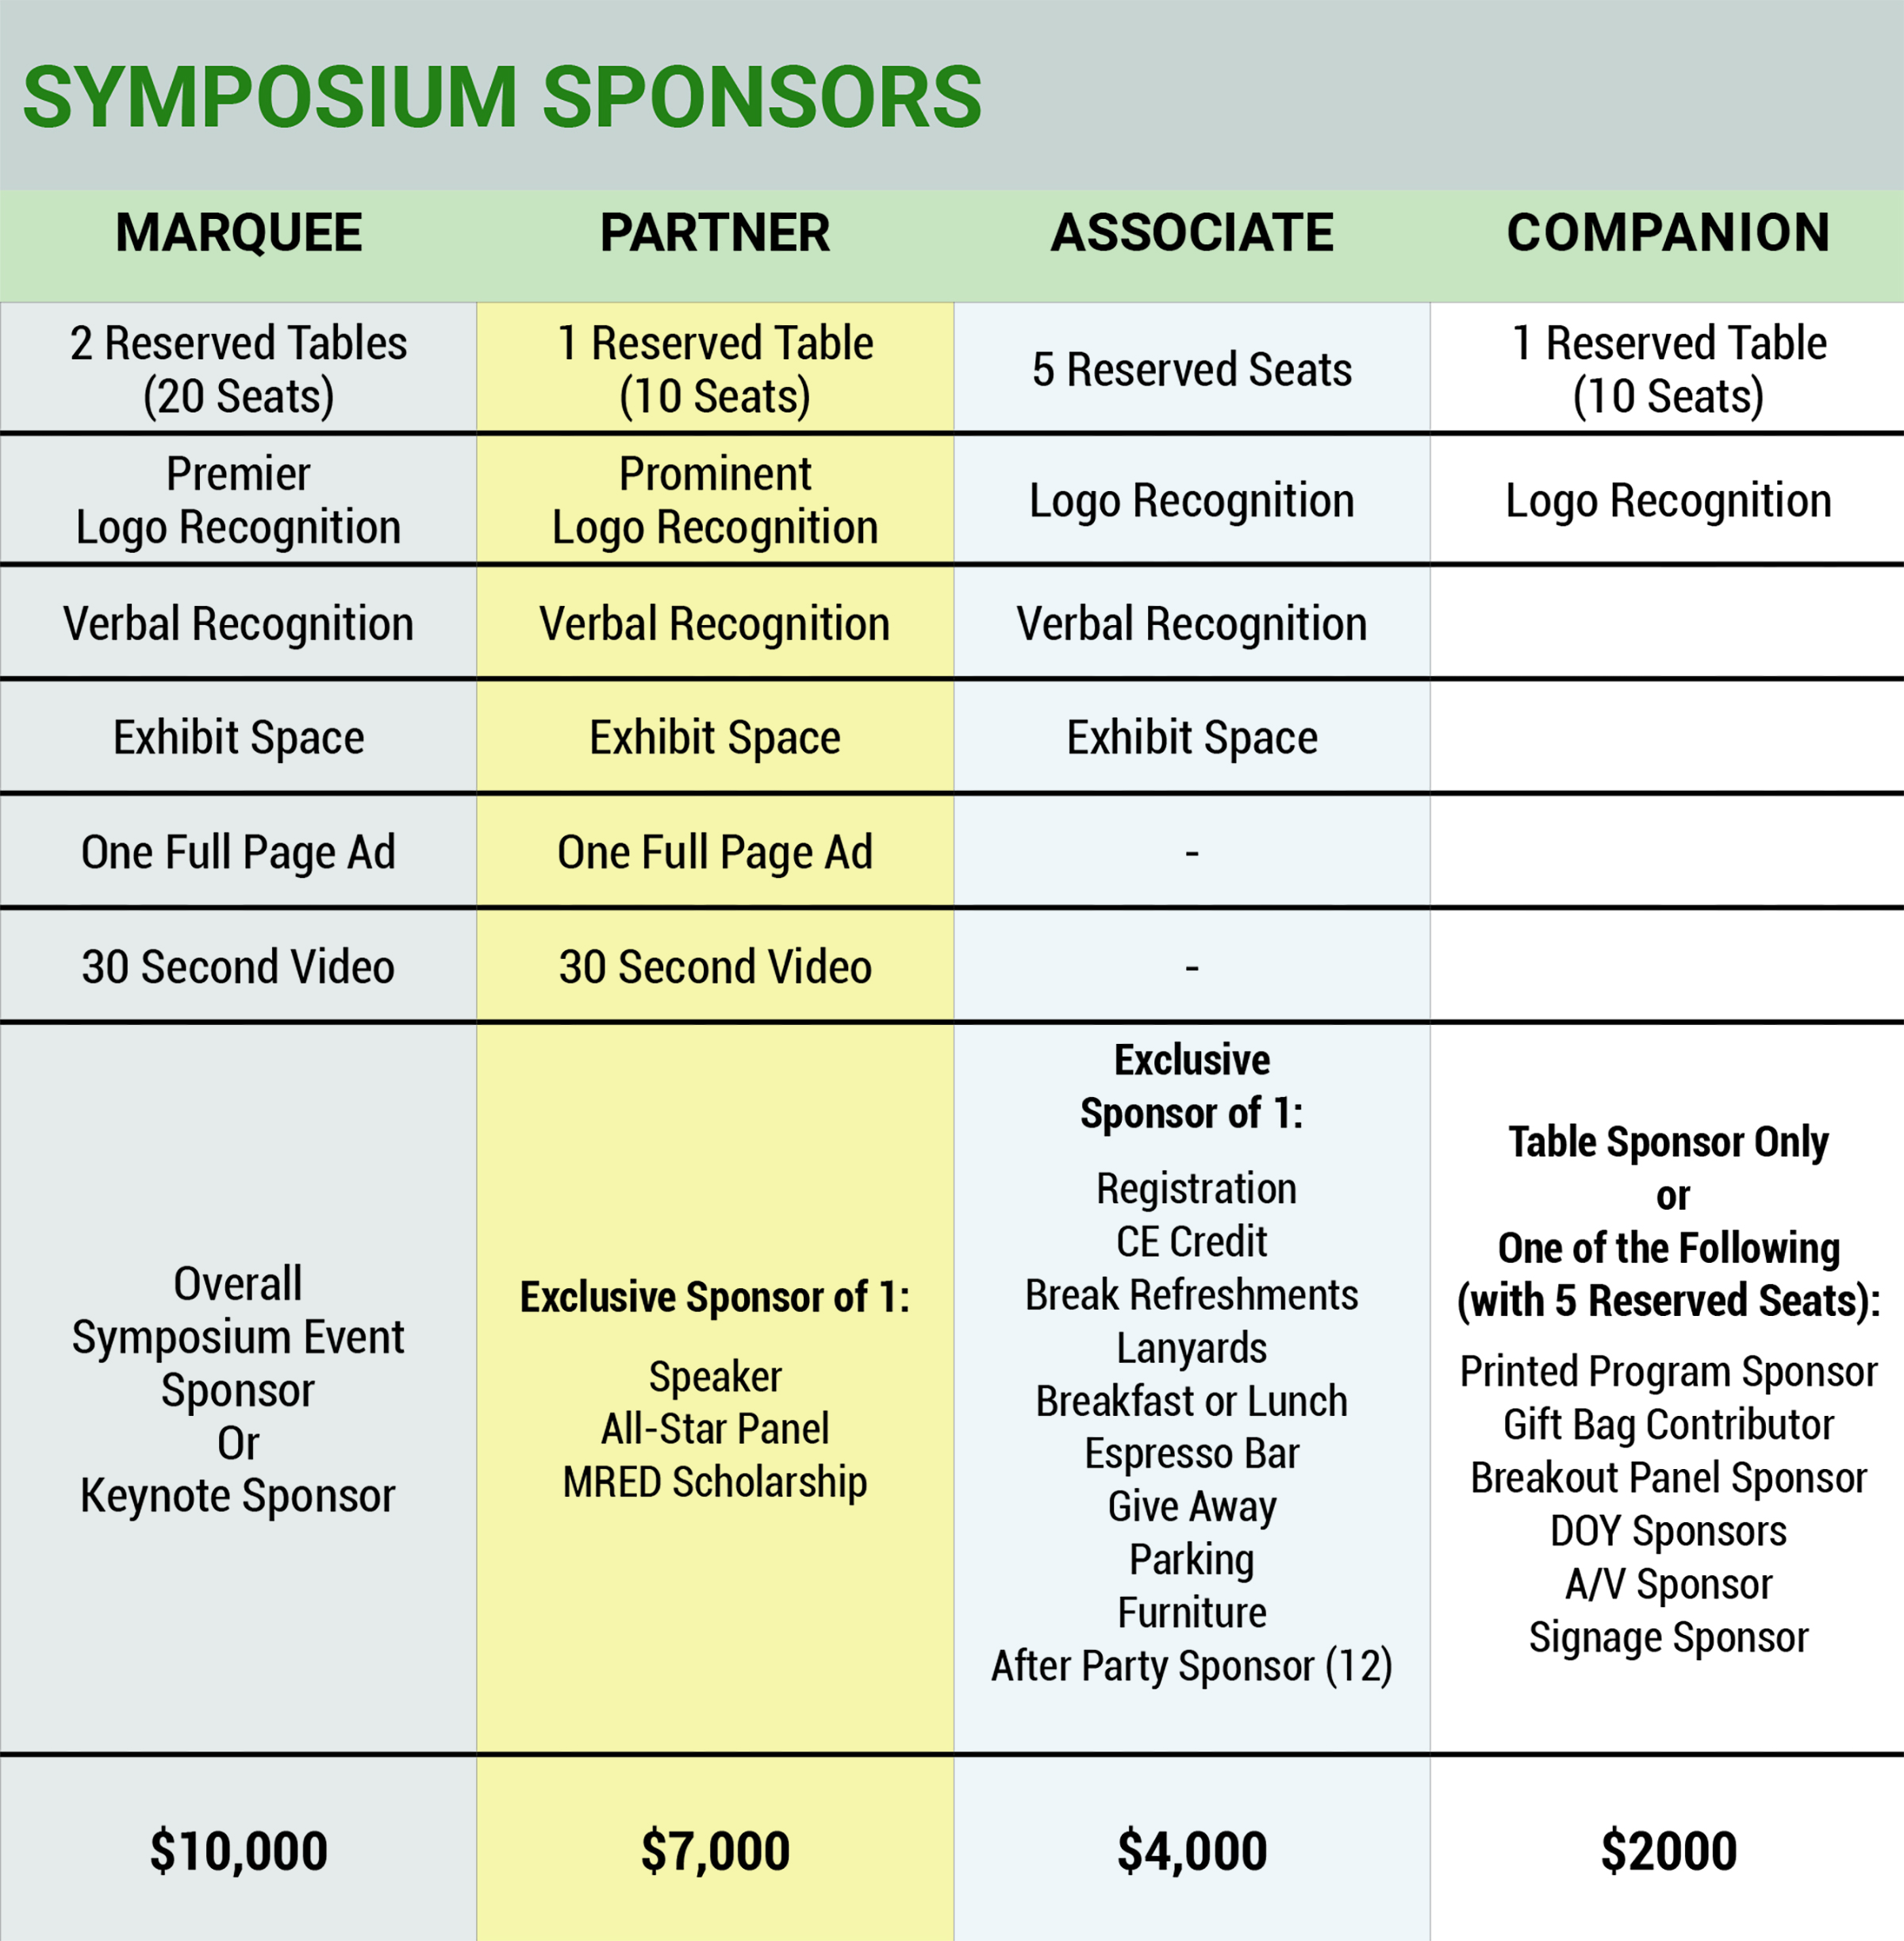 Symposium Sponsorships